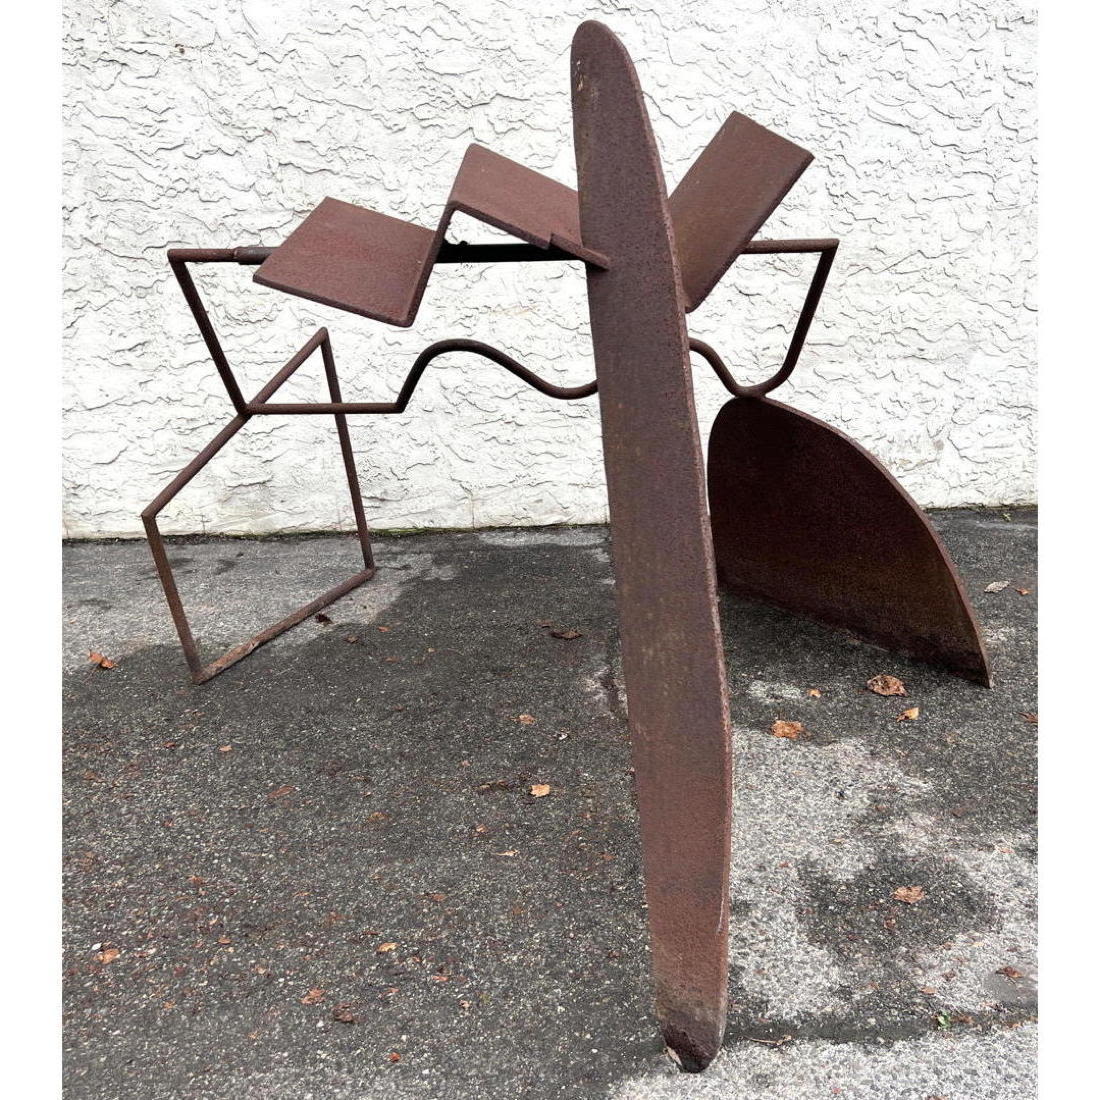 Abstract Modern Iron Garden Sculpture  2b8980